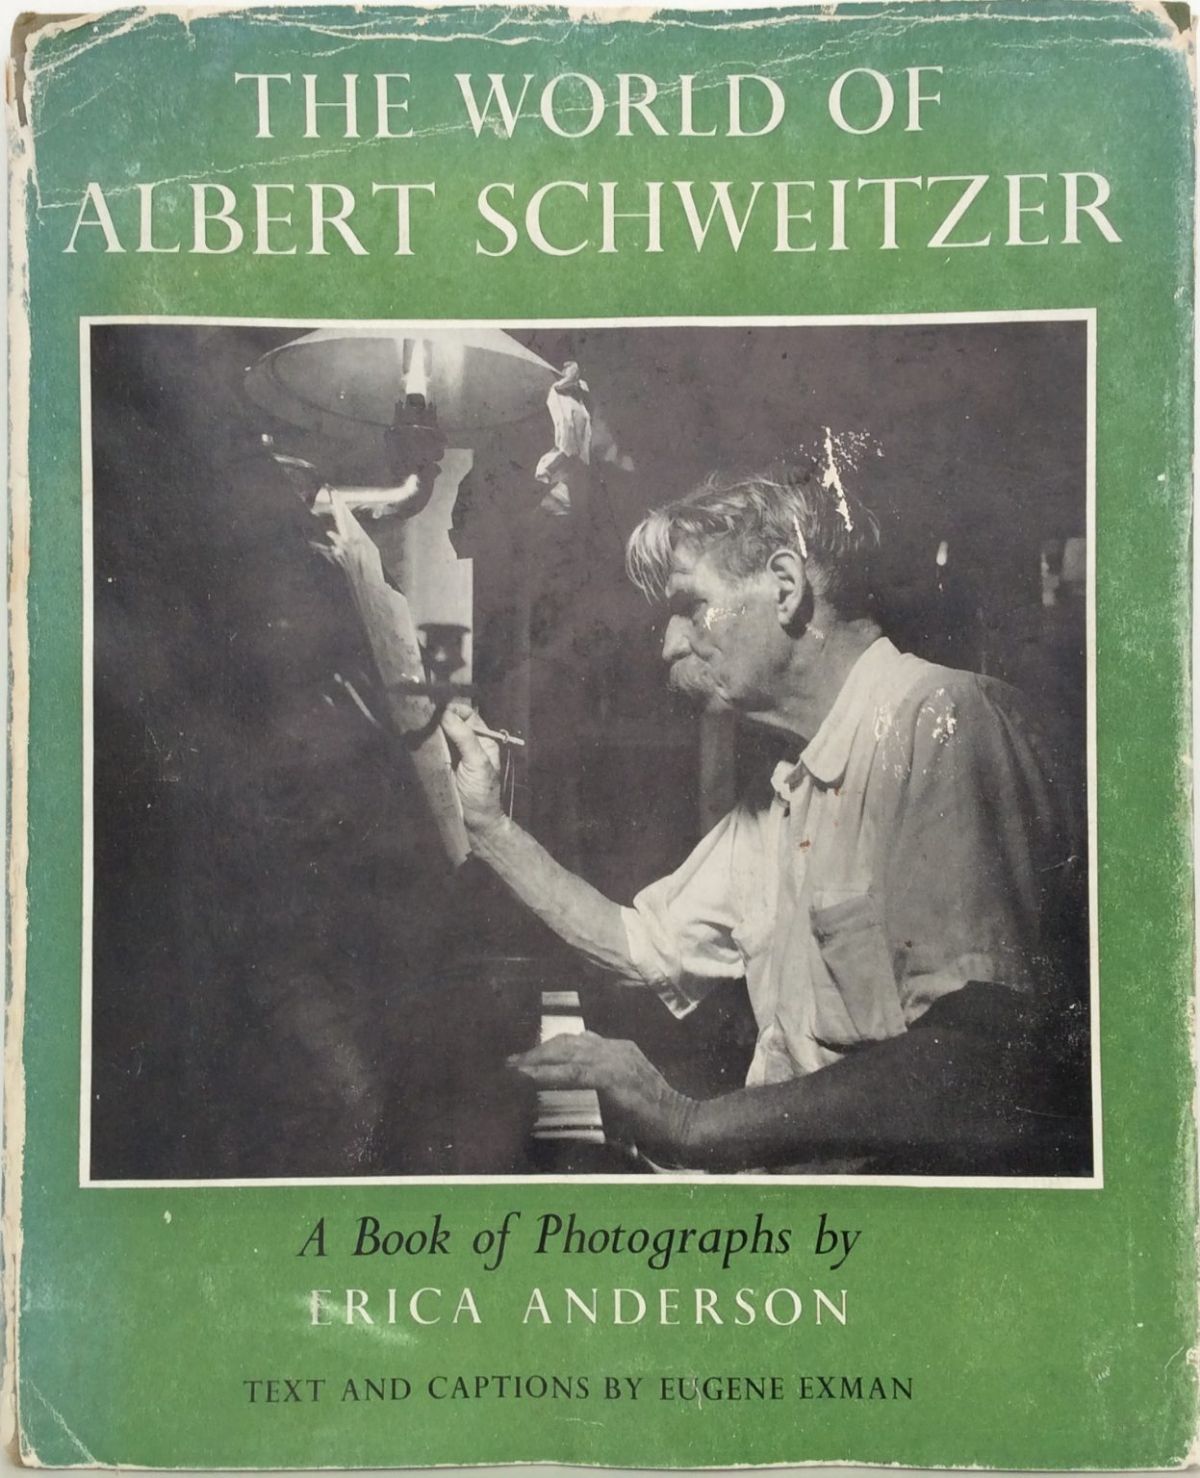 THE WORLD OF ALBERT SCHWEITZER: A Book of Photographs